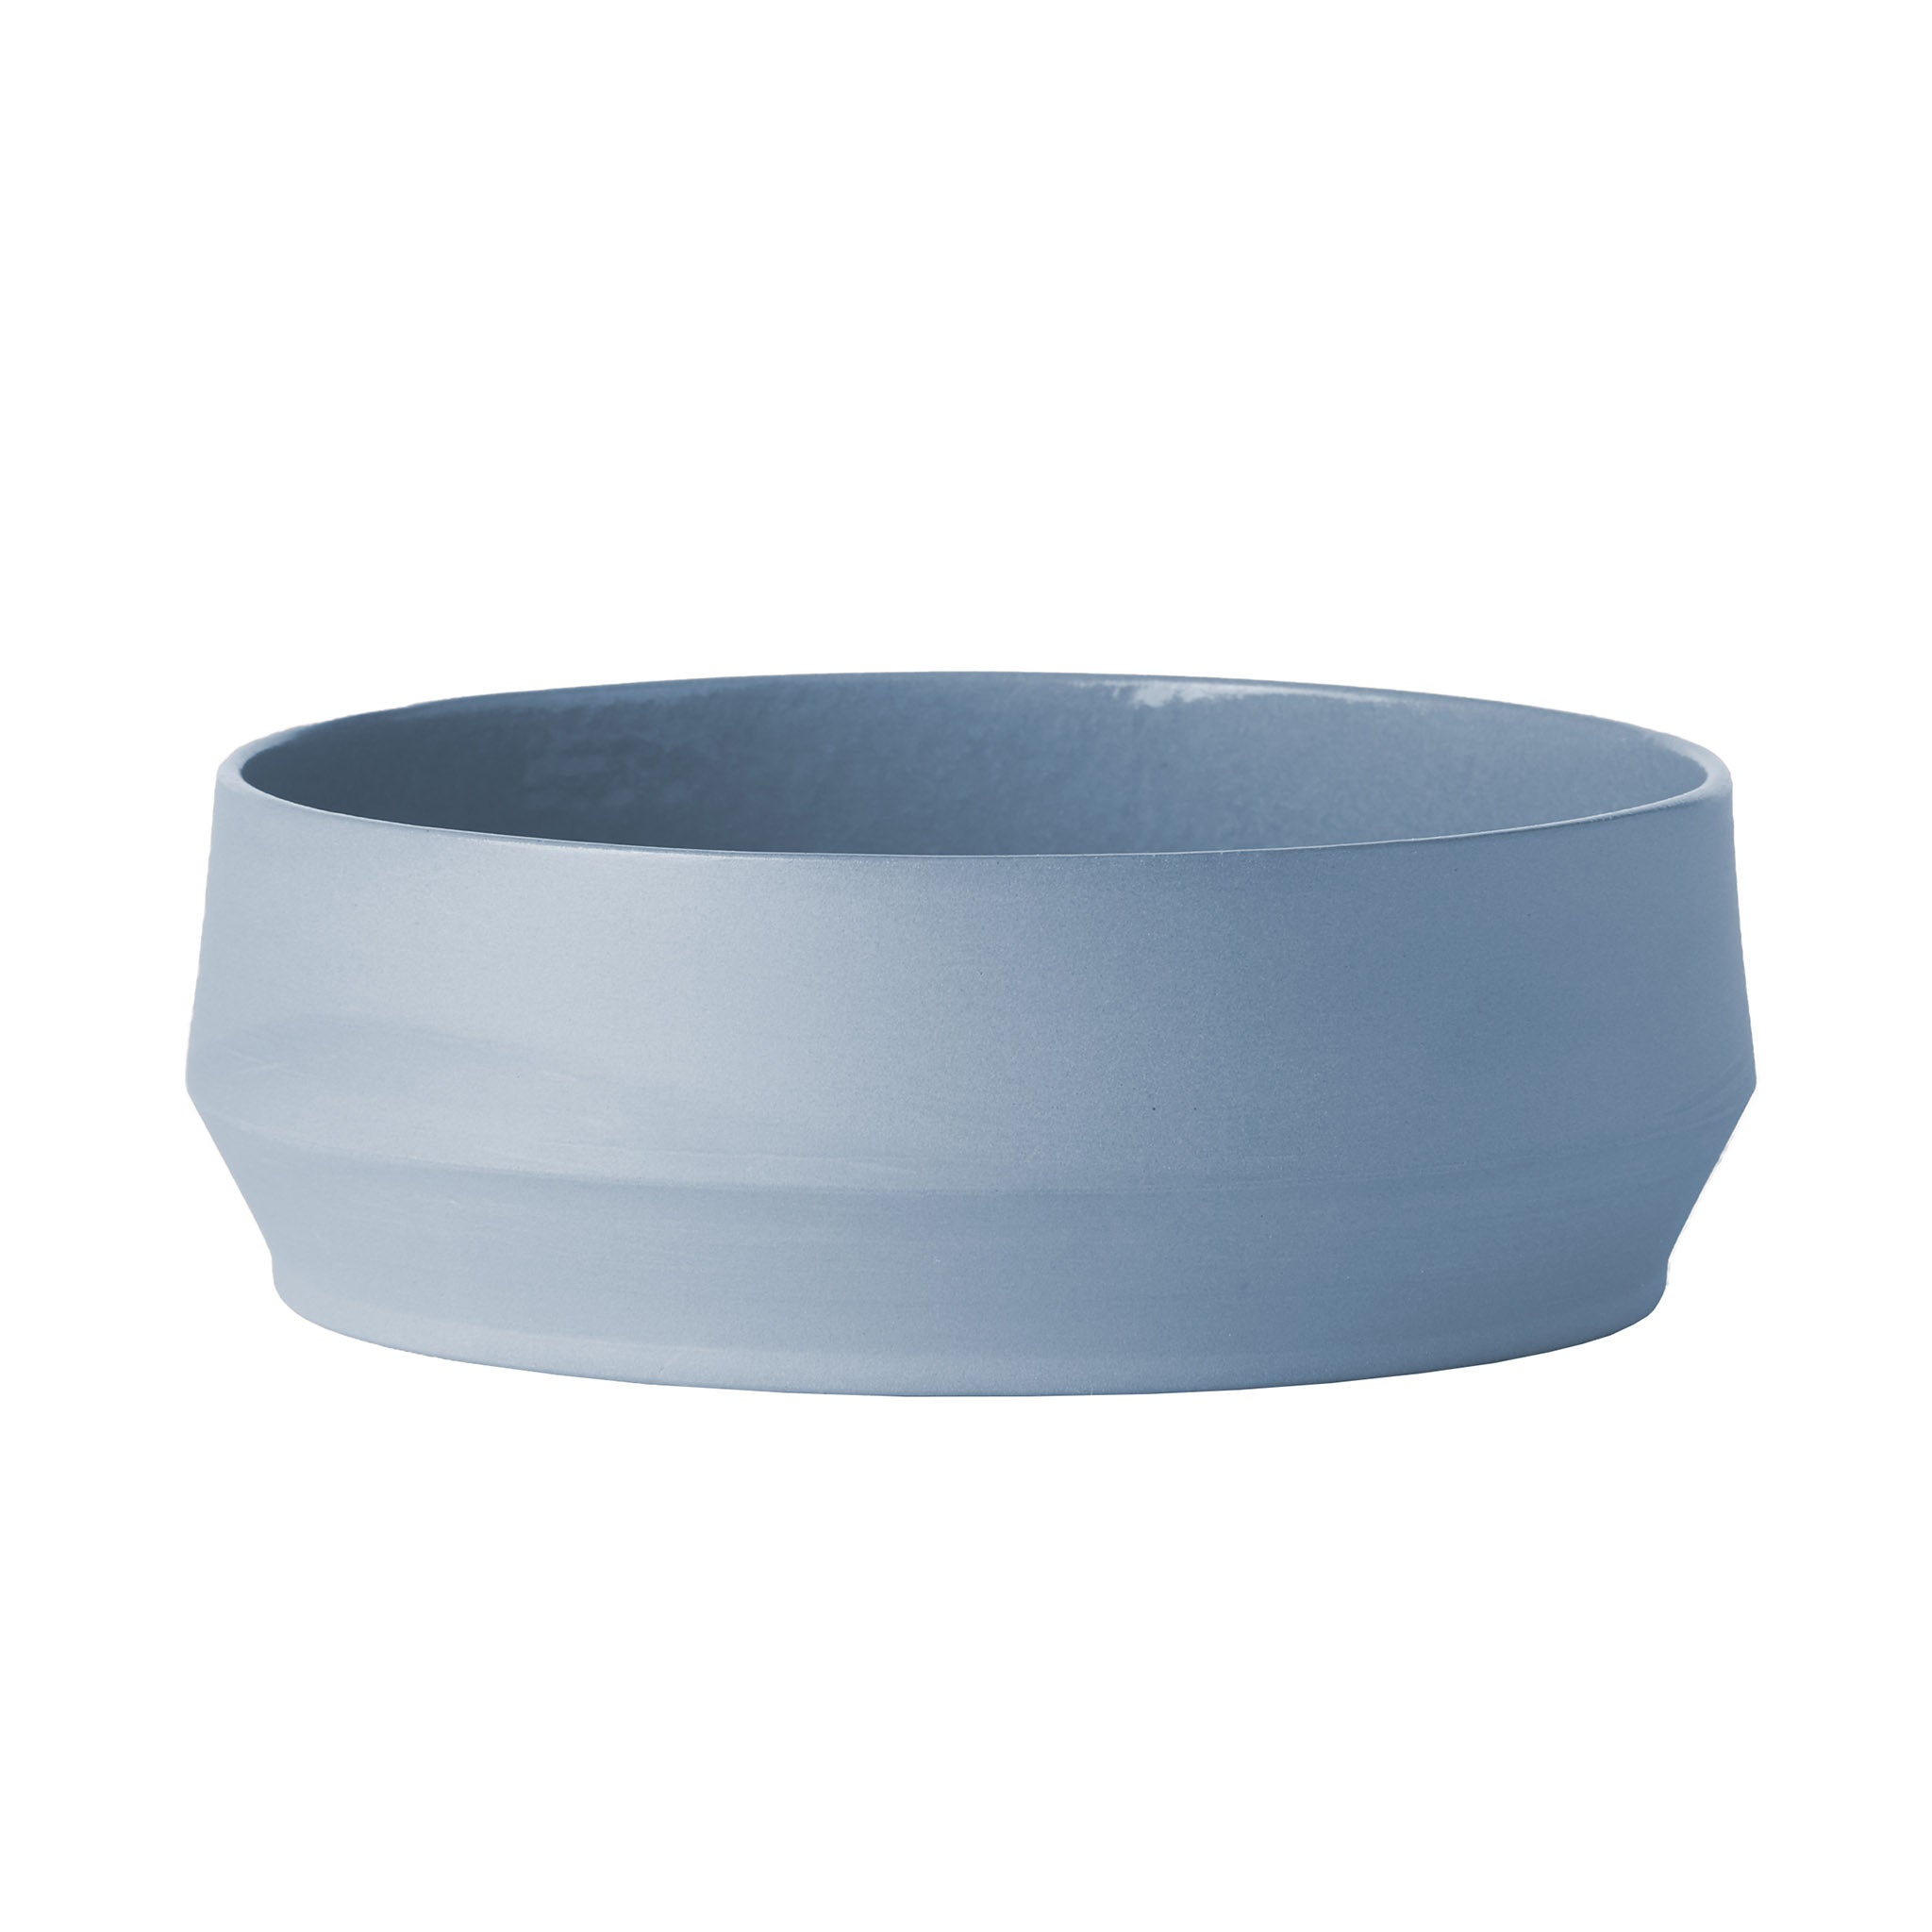 Unison Schale aus Keramik von Schneid Studio in der Farbe Babyblau